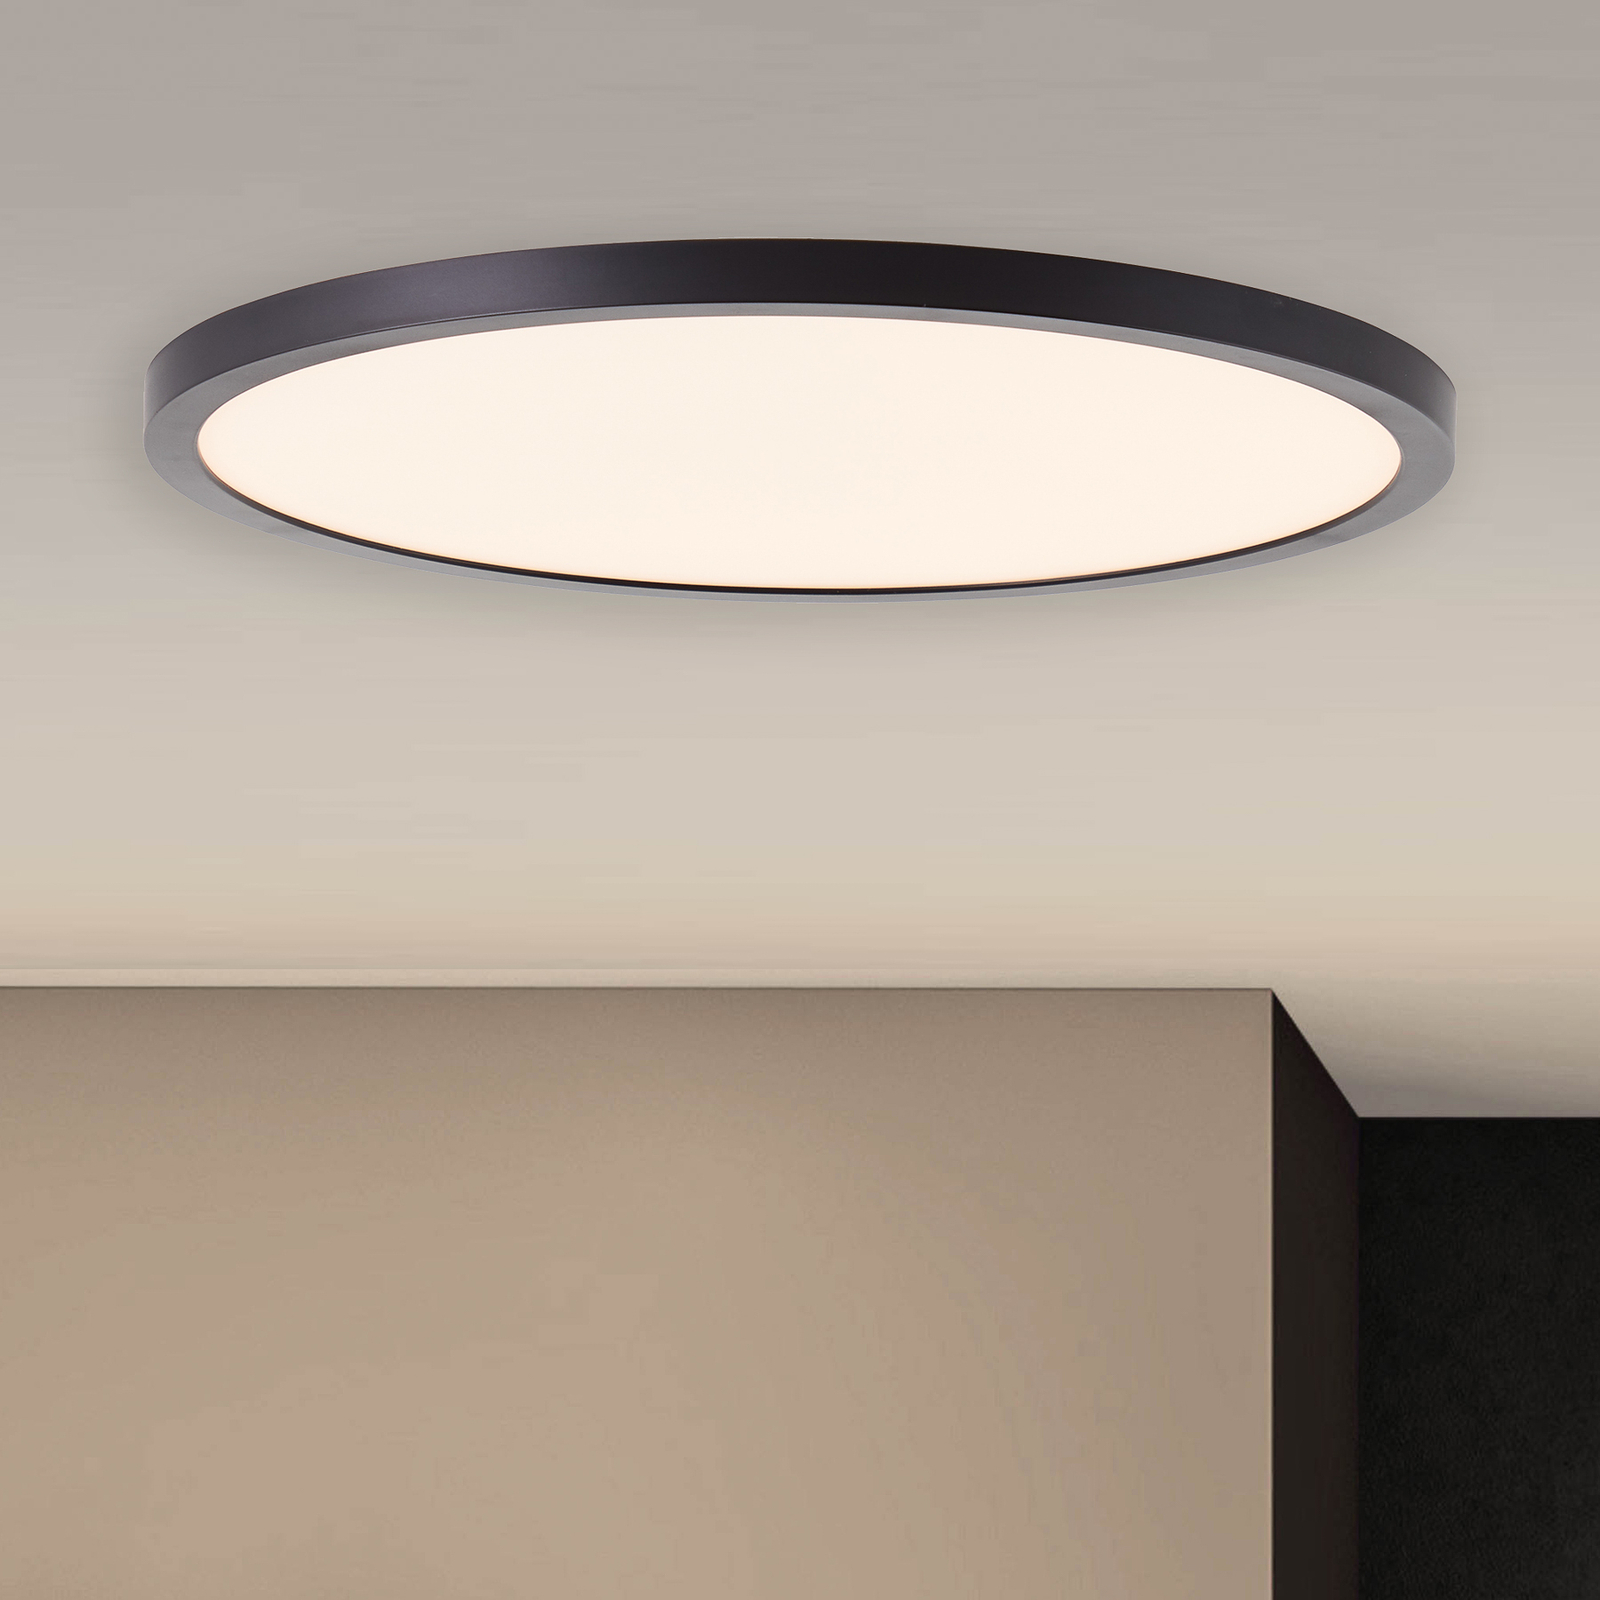 koper prachtig Echter LED plafondlamp Tuco, dimbaar, zwart, Ø 30 cm | Lampen24.nl